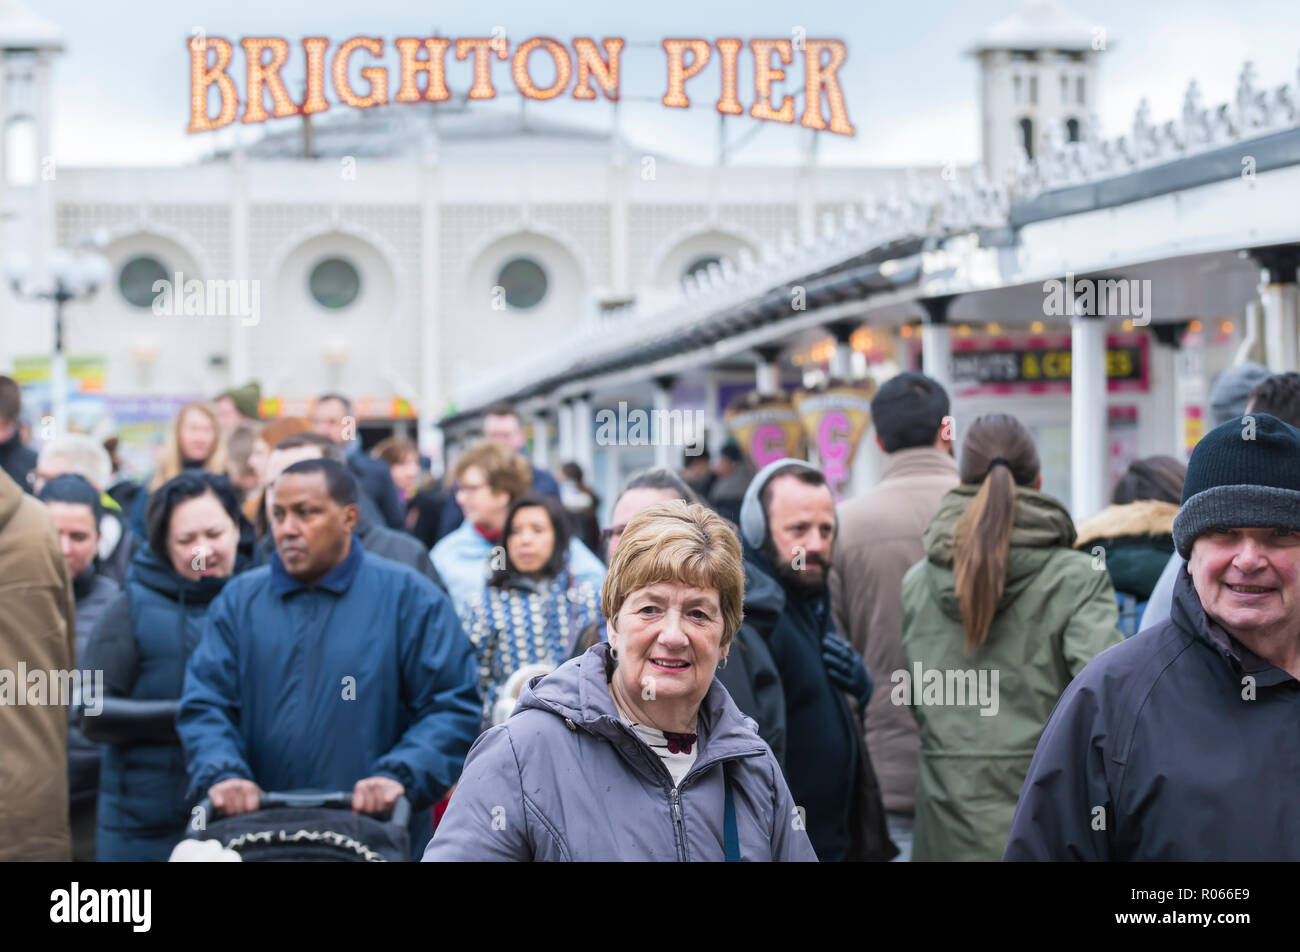 Des foules de gens portant des manteaux par une froide journée de printemps sur une longue jetée de Brighton, East Sussex, Angleterre, Royaume-Uni. Banque D'Images